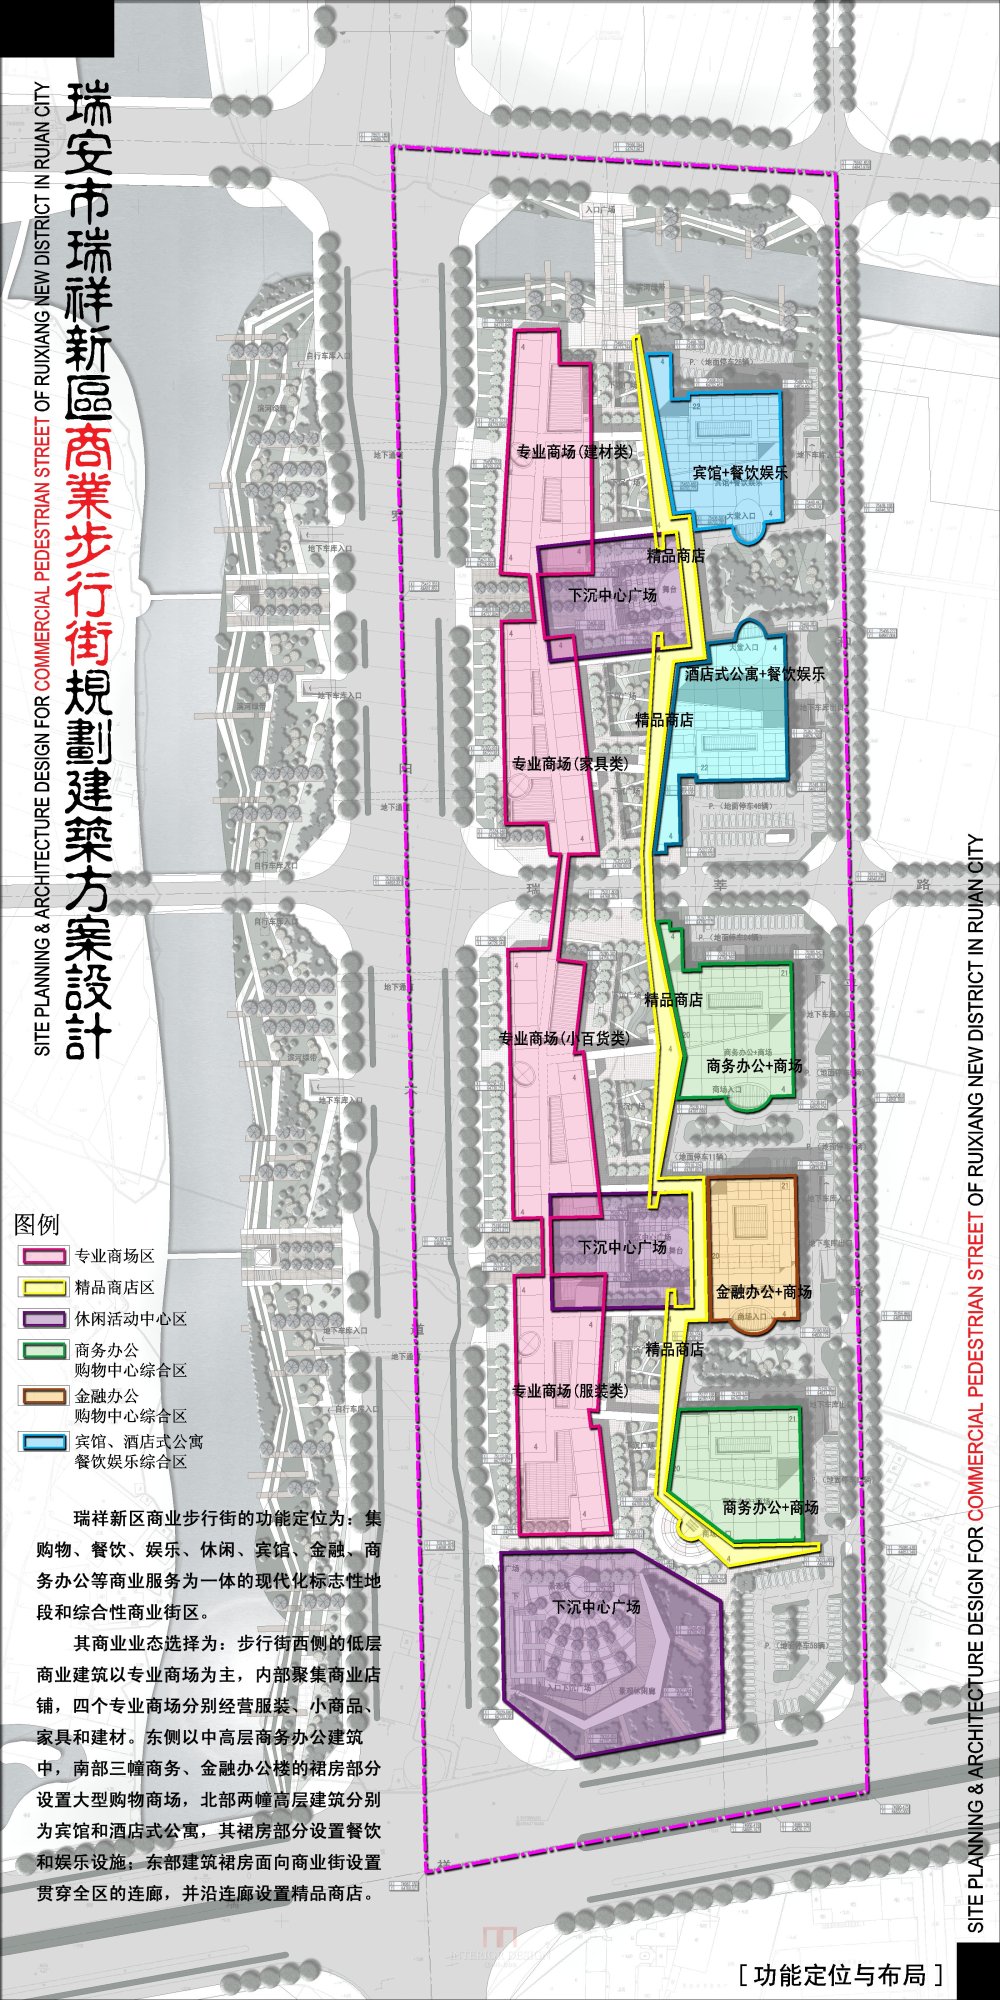 浙江瑞安新区商业步行街规划建筑设计方案_1-05瑞安商业街-功能定位与布局.jpg